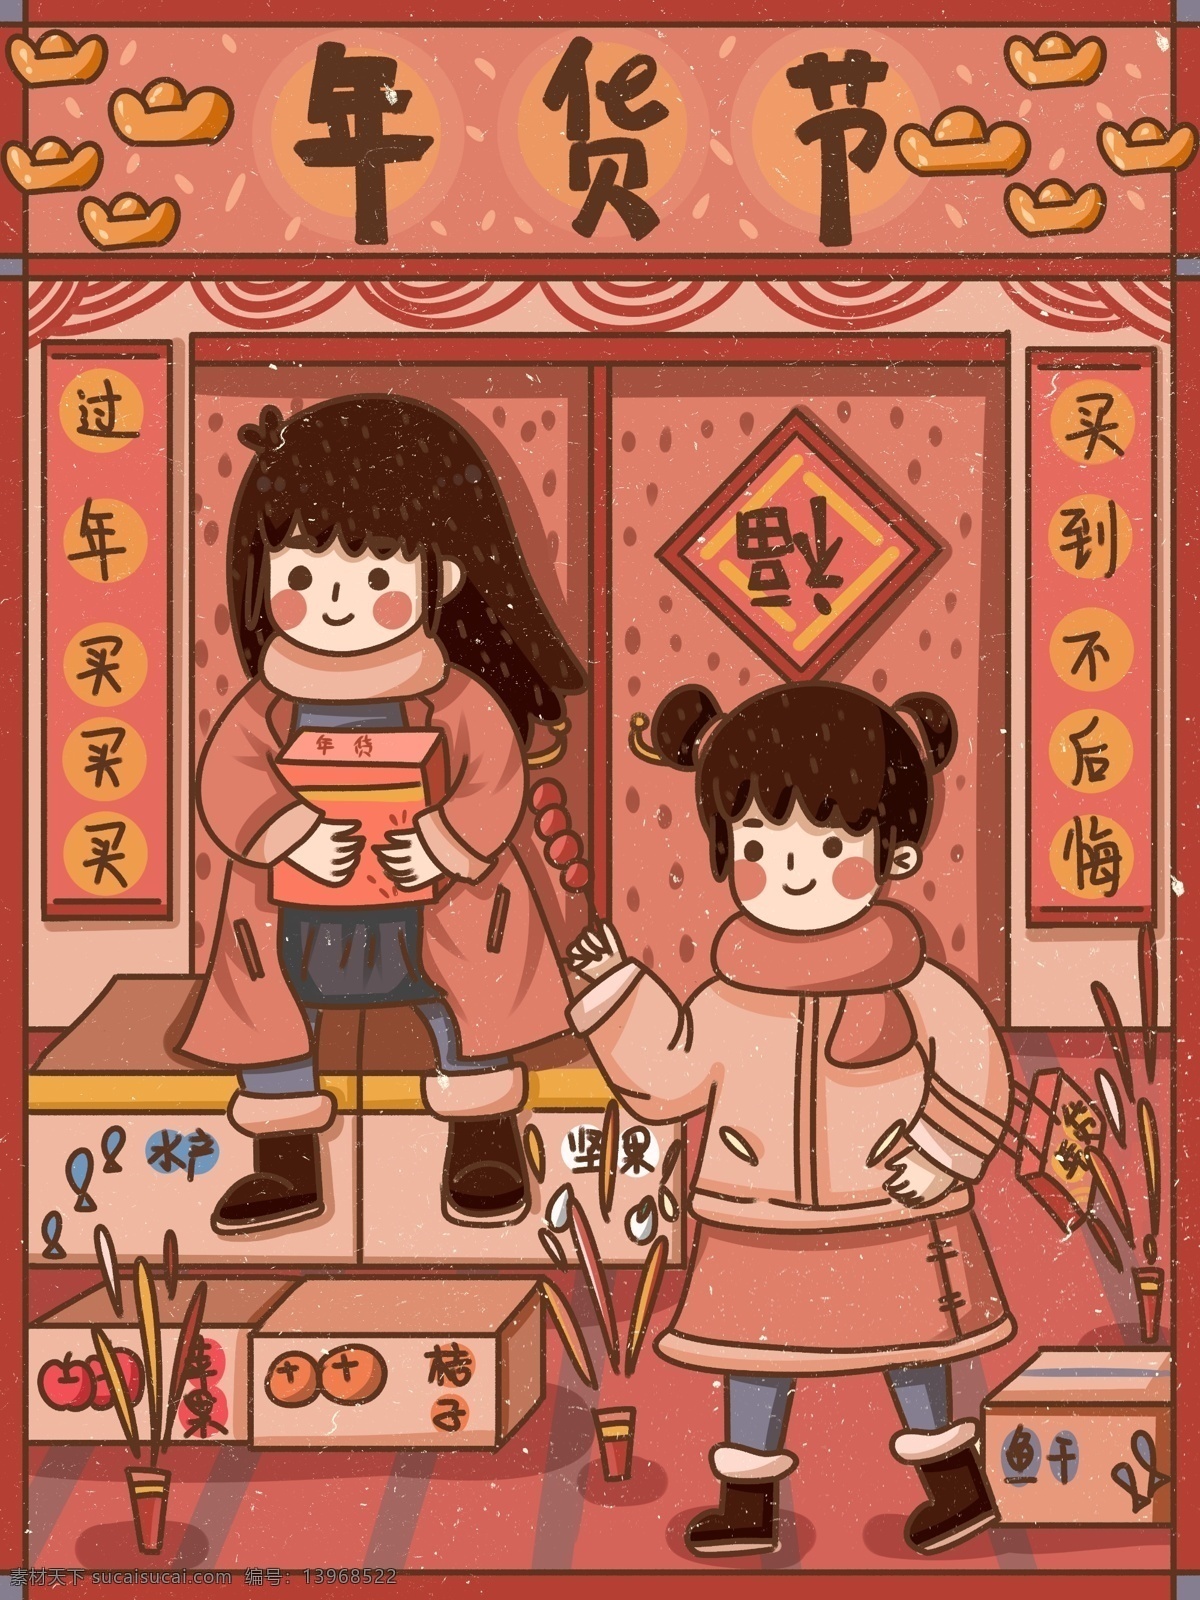 中国 年过 新年 过年 送礼 购物 创意 海报 年货 节 中国风 可爱 纹理 年货节 拜年 喜气 中国年 复古大字报 肌理 干货 副食品